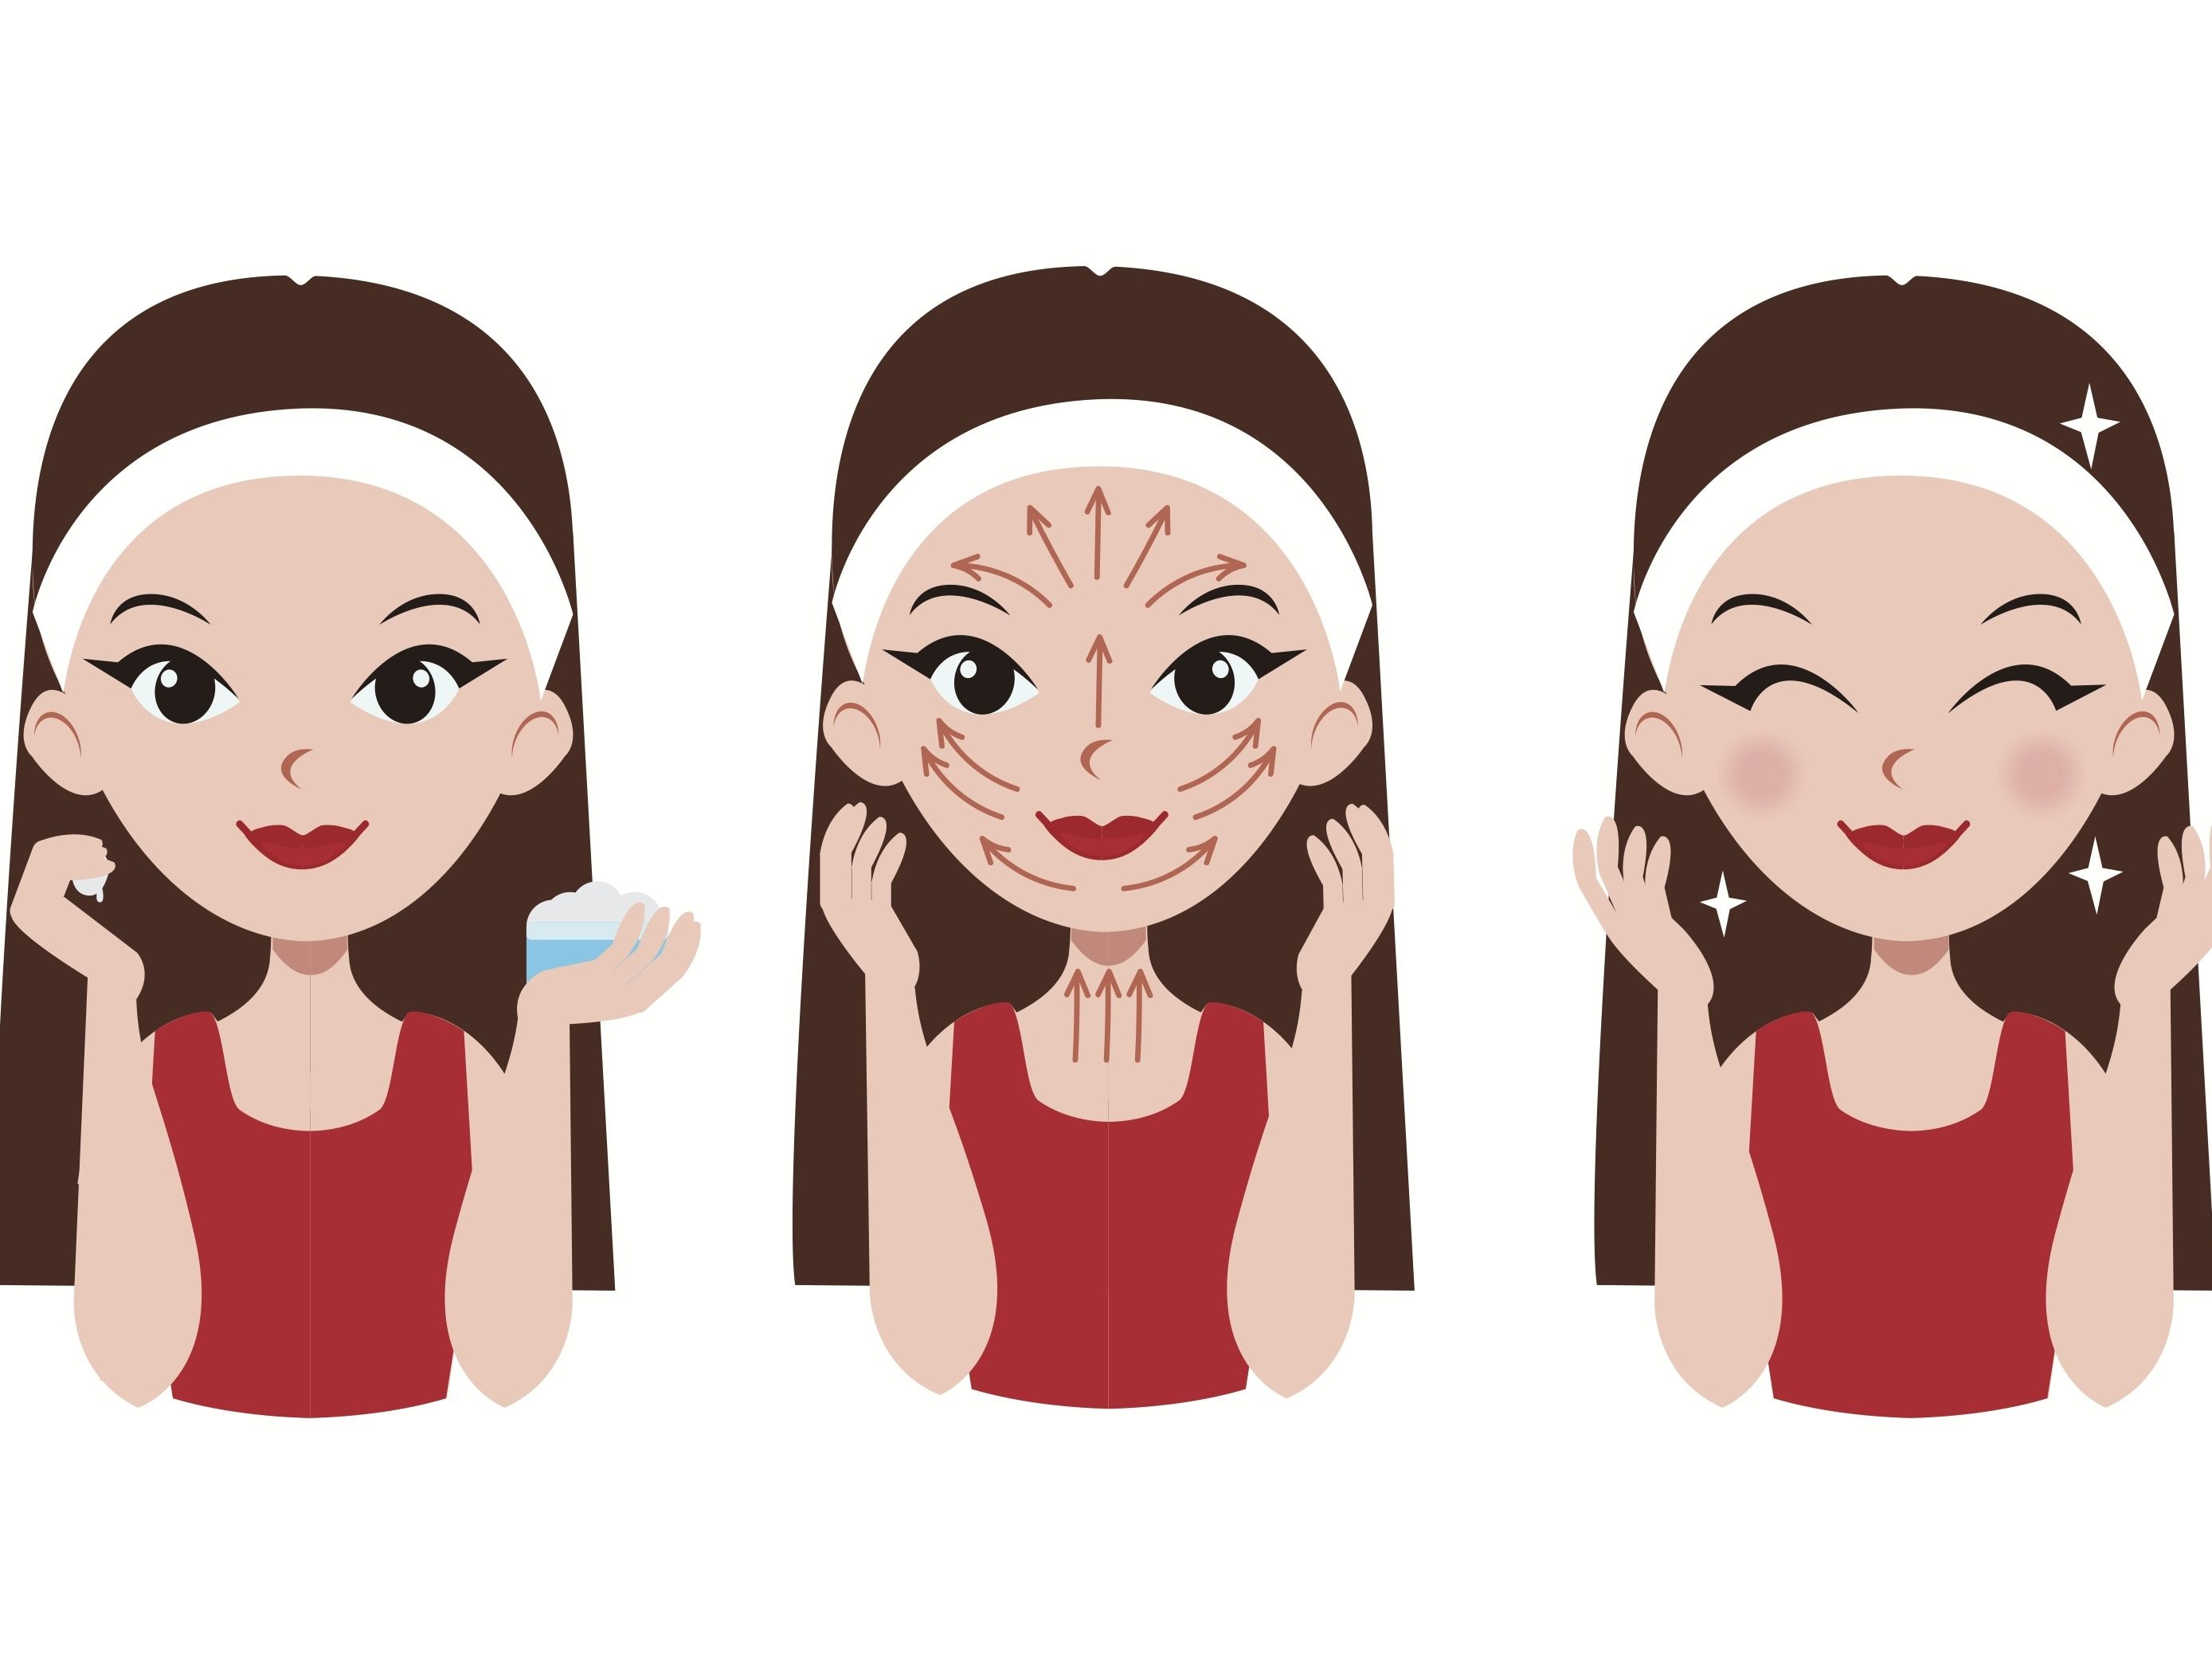 10 ejercicios para rejuvenecer el rostro - Fuentes consultadas: